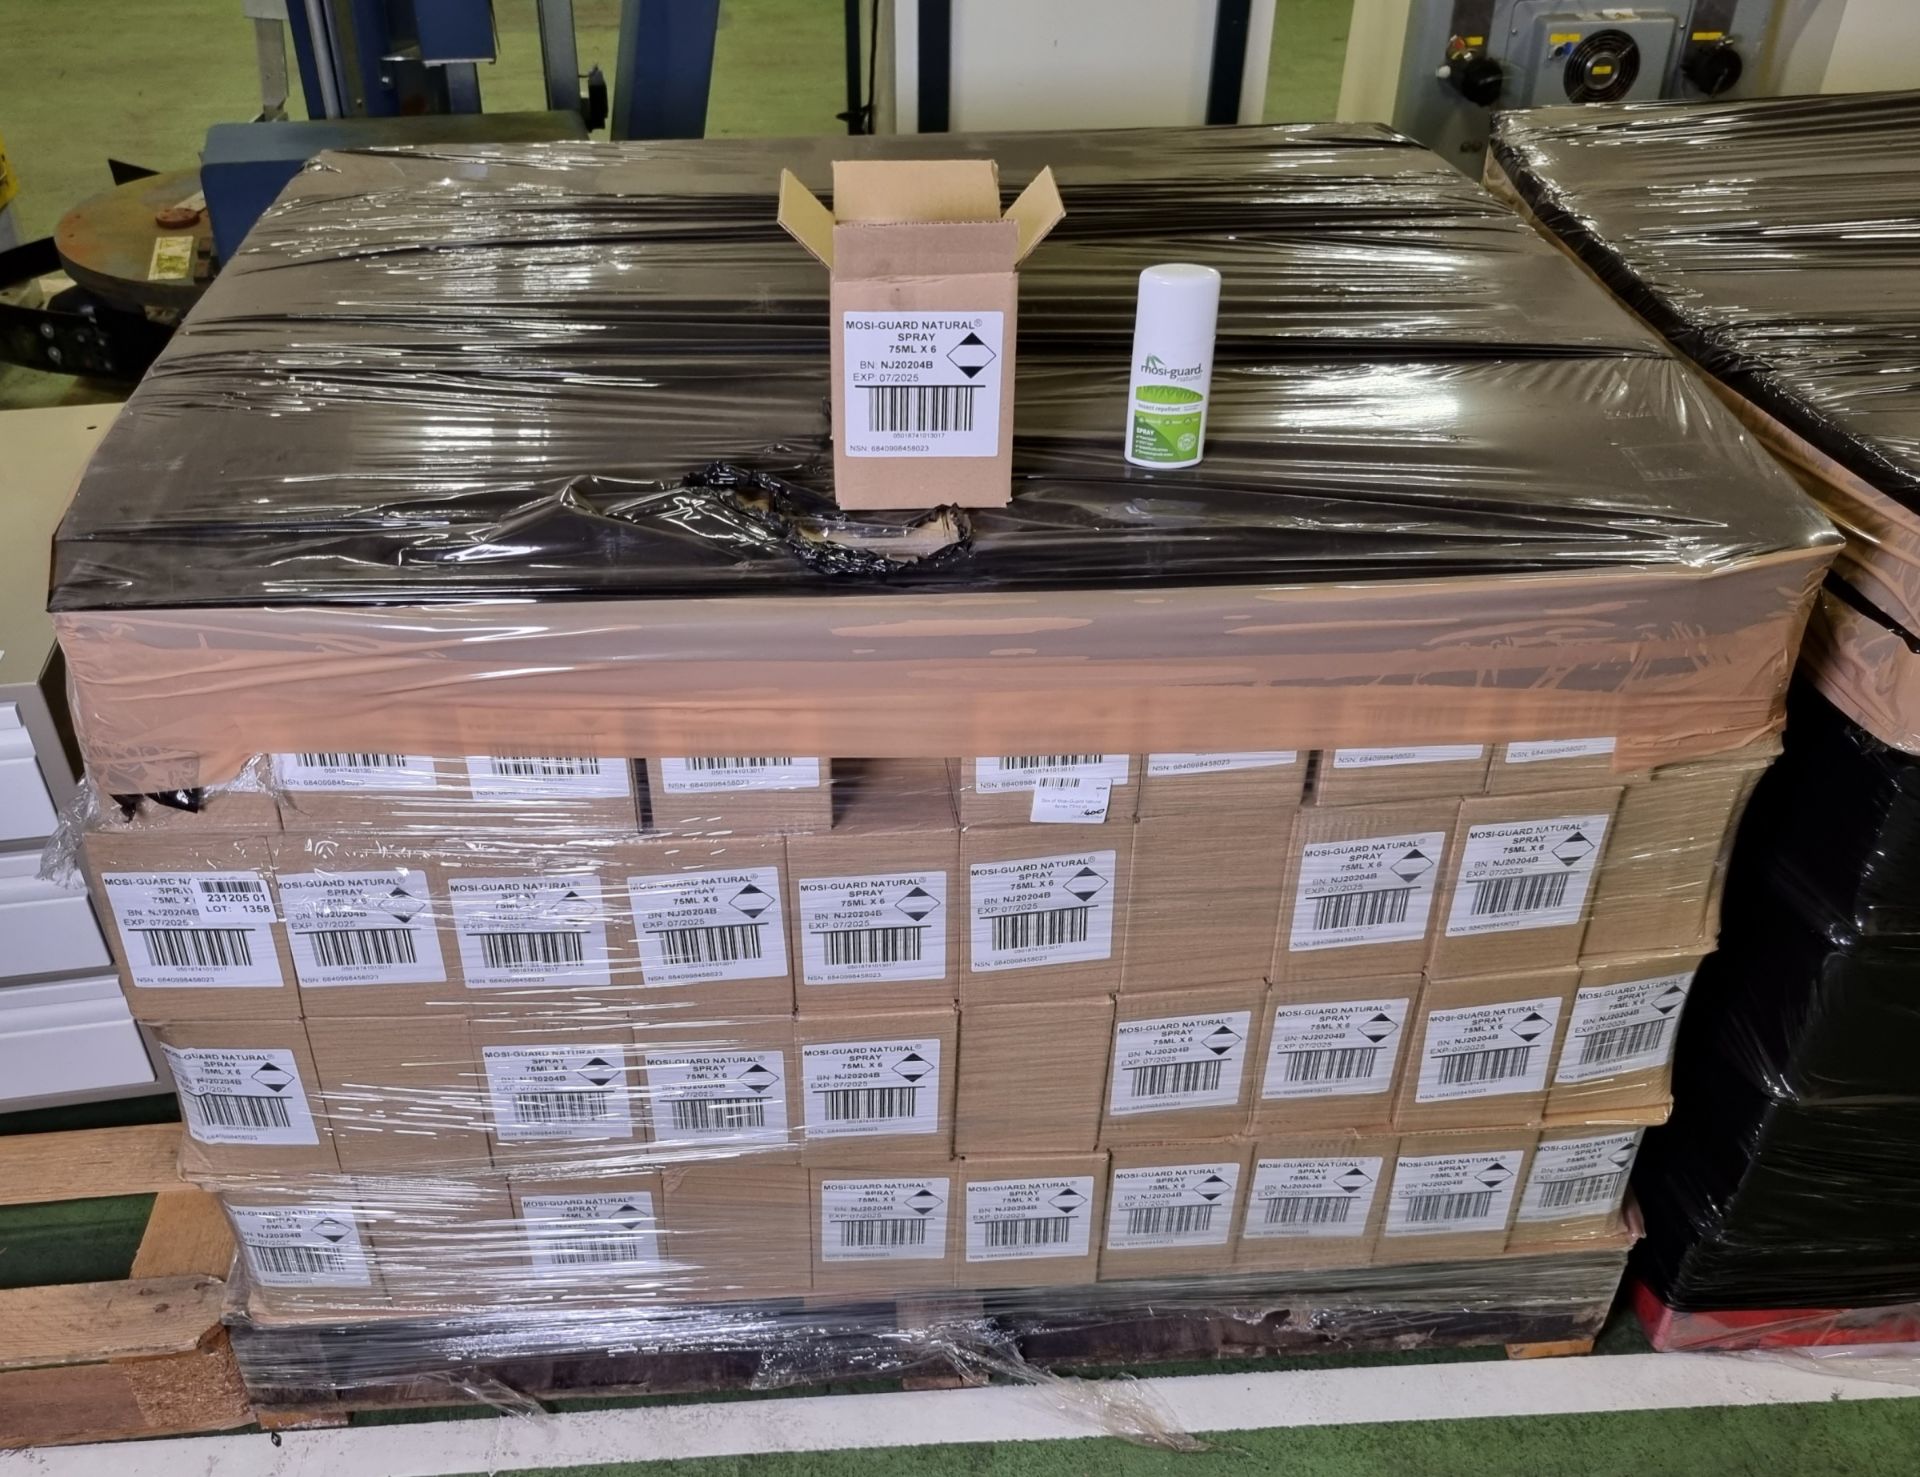 400x boxes of Mosi-Guard Natural Spray 75ml - 6 per box